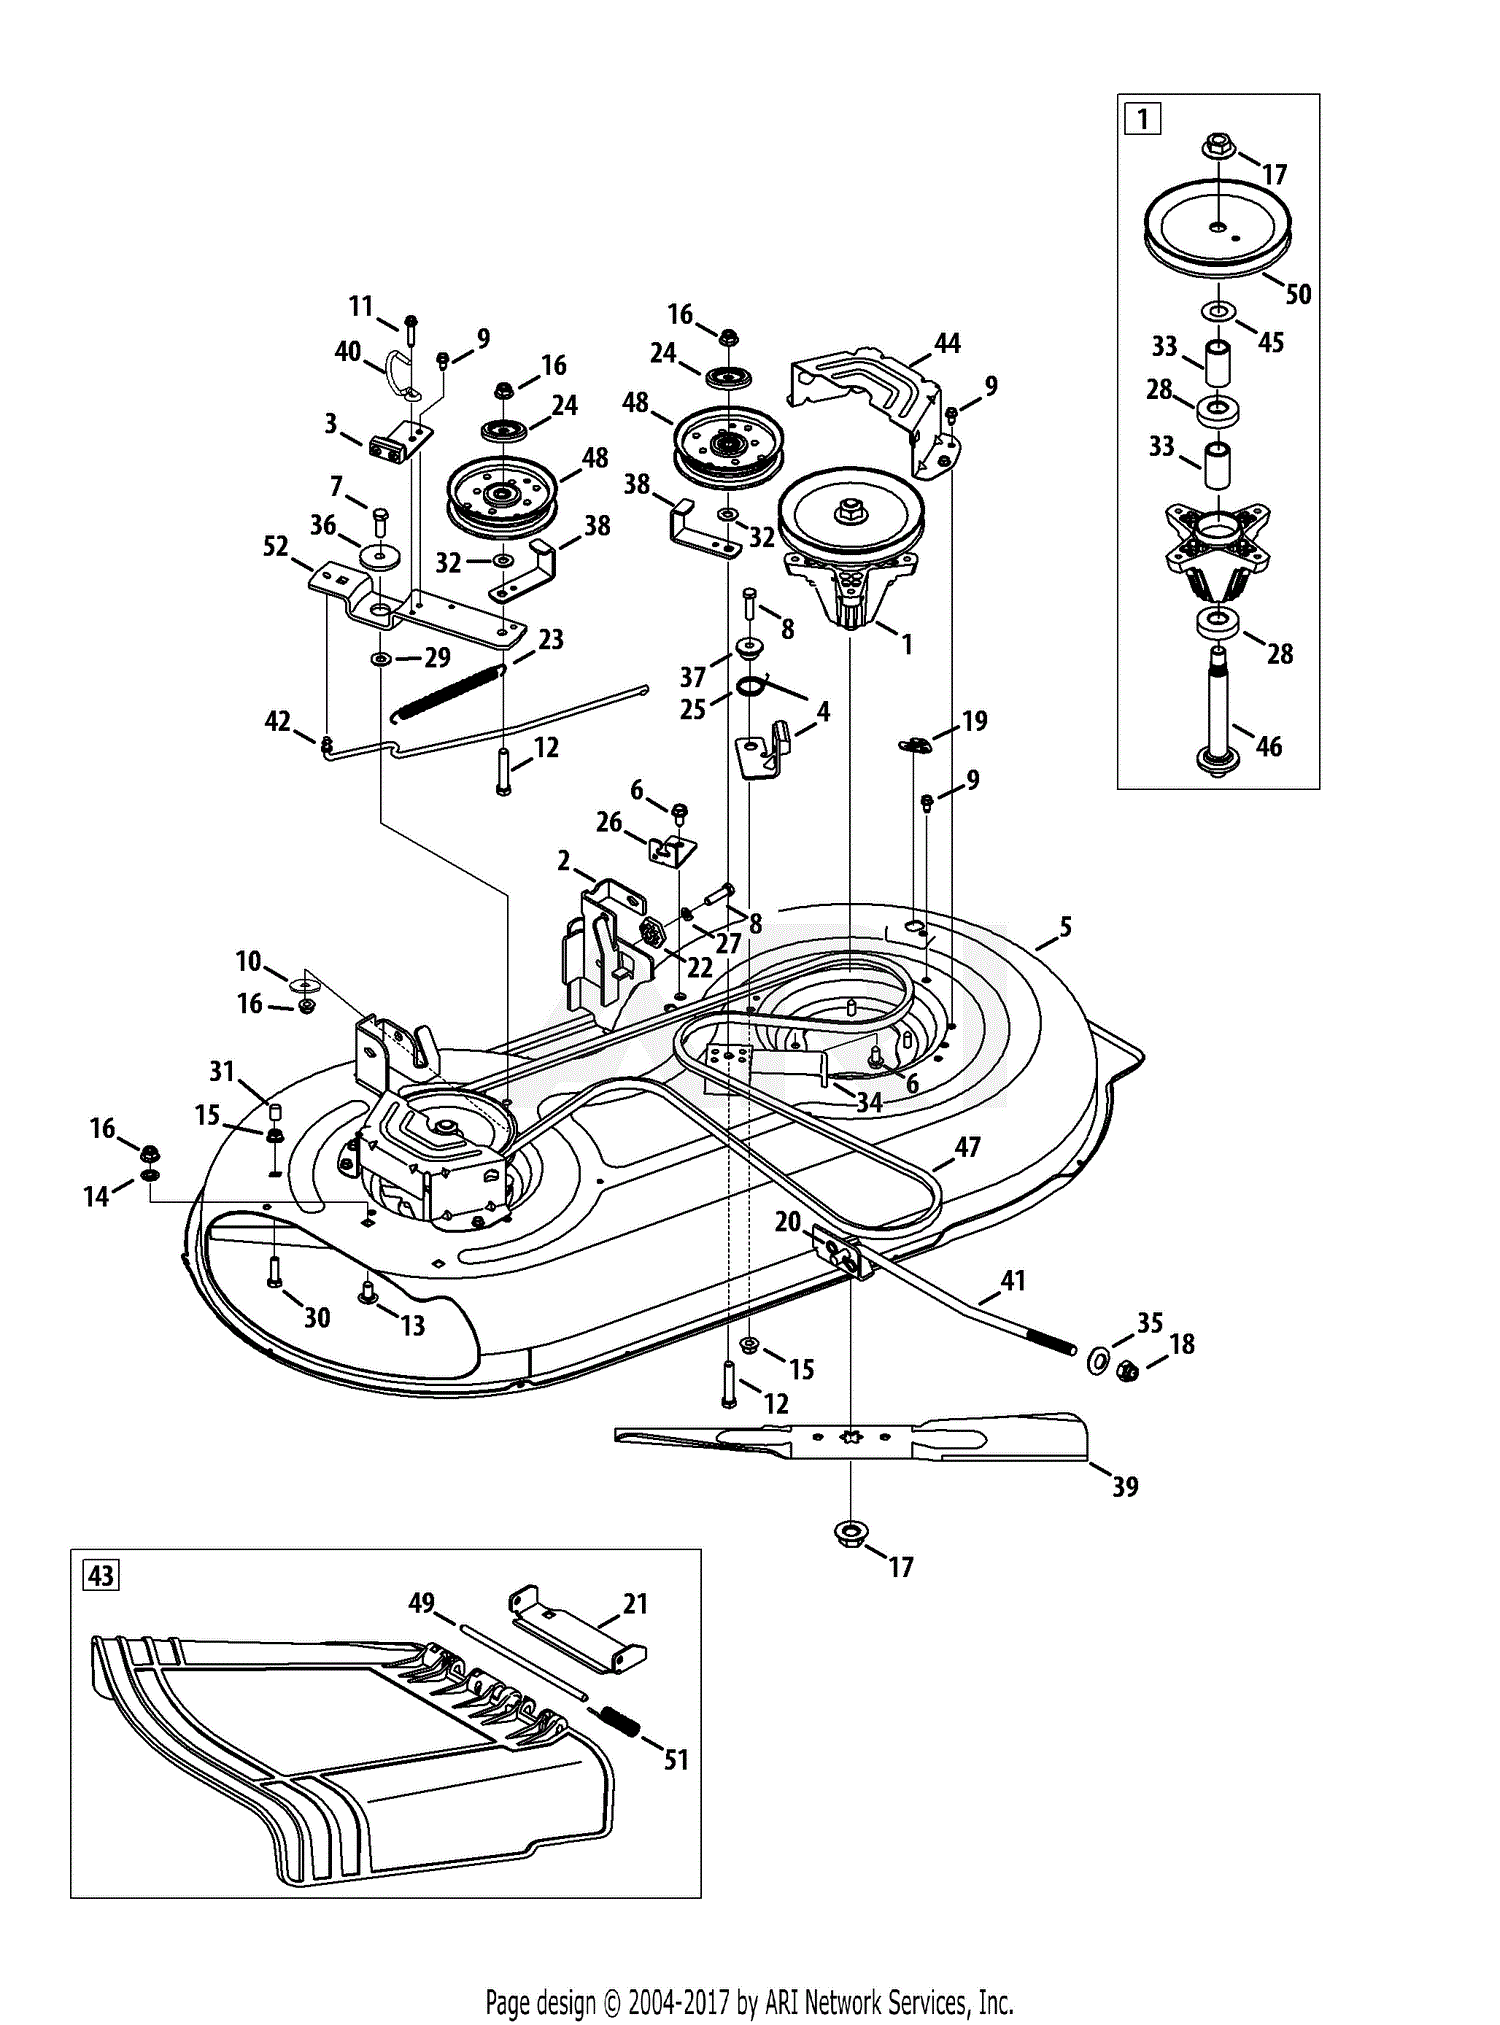 yardman riding mower wiring diagram